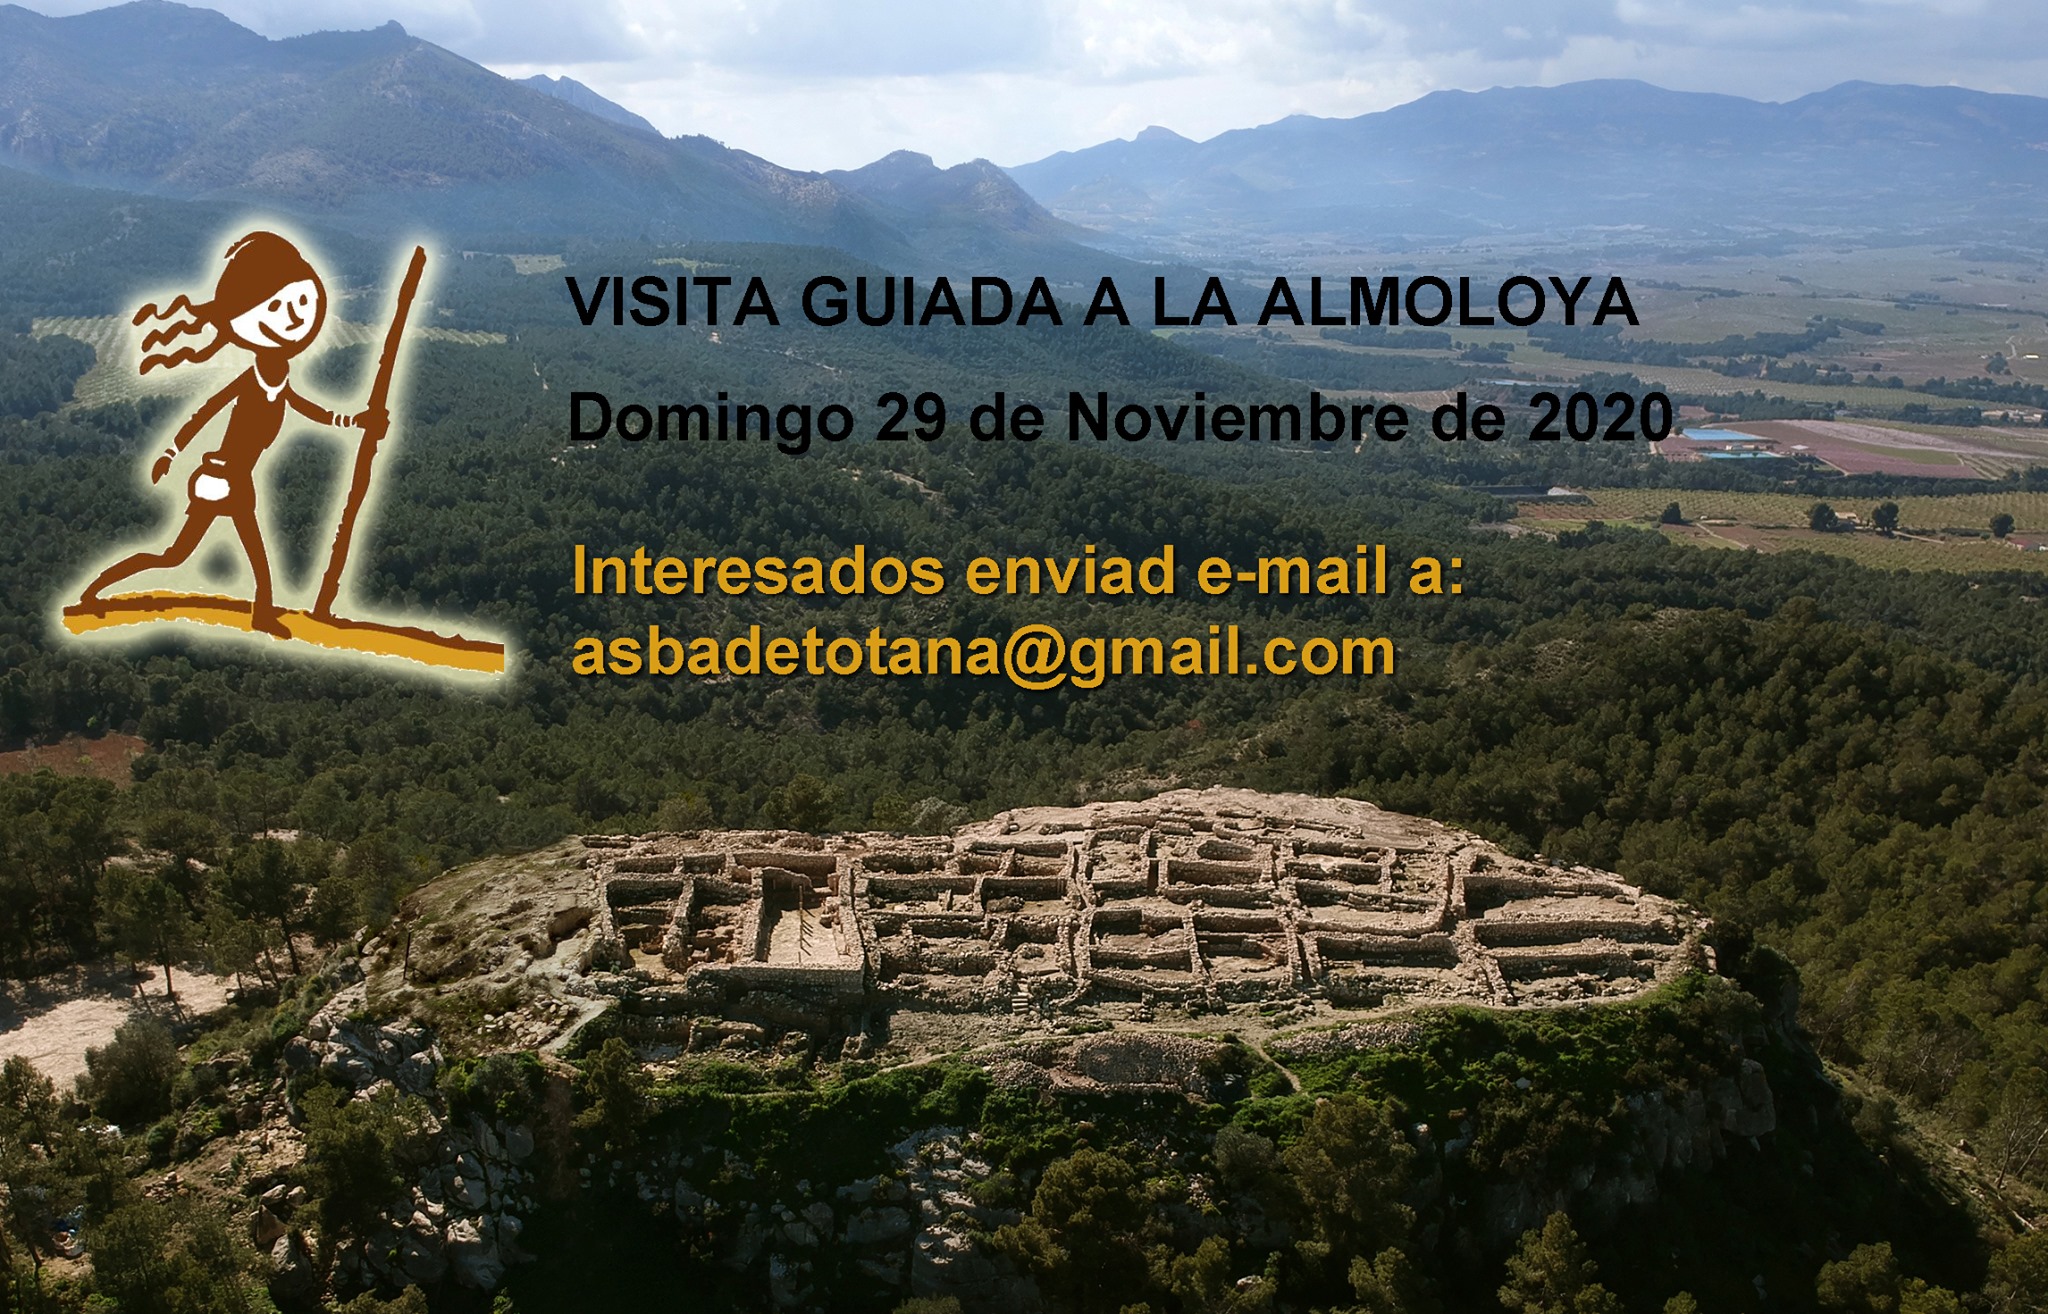 Visita guiada a La Almoloya en noviembre 2020, con ASBA